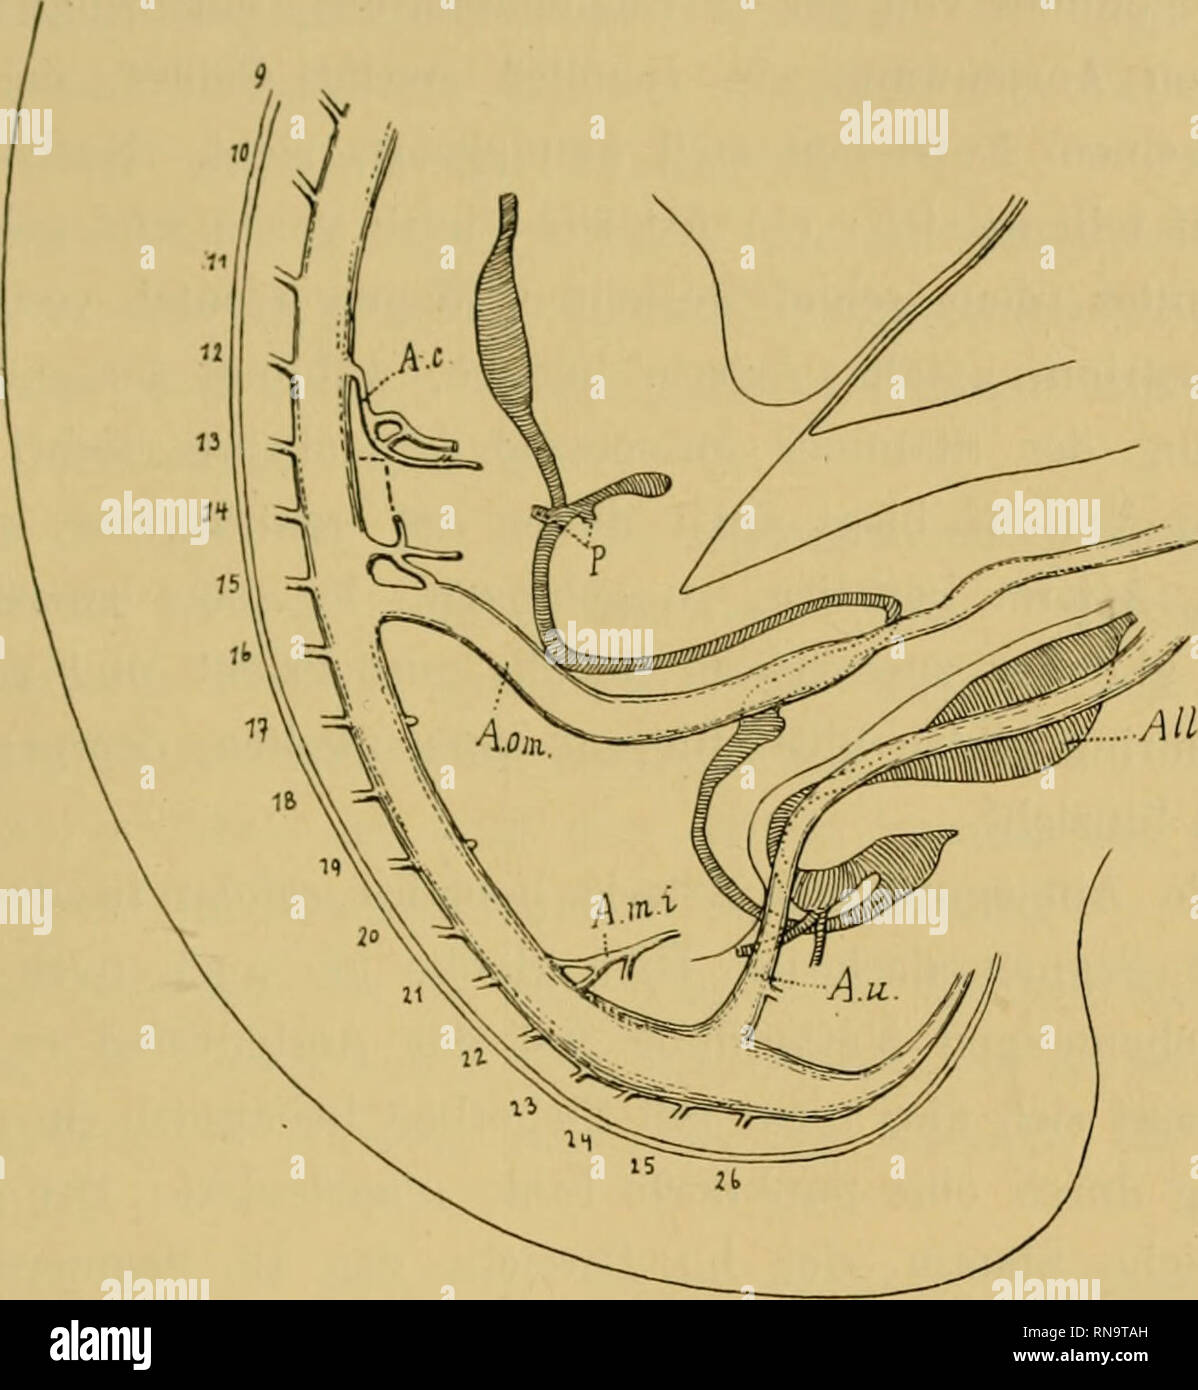 . Anatomische Hefte. Zur Kntwickelungsgeschichte der menscliliclion Darmarterien. 197 Die Sagittalrekonstruktion dieses Embryo wurde in der IlTihc der 9. segmentalen Rumpf wandarterie begonnen. (Fig. 2.) Der Magen ist deutlich abgegrenzt, seine grosse Kurvatur ist ein wenig nach links gerückt. Die Mündungen des dorsalen und ventralen Pankreas sind einander sehr nahe. Unterhalb. Textfigur 2. Sagittalrekonstruktiou des Embryo huiu La. bei 50 facker Vergrösserung rekonstruiert, bei 20facher Vergrösserung reproduziert. A. c. Art. coeliaca. A. oin. Art. omphalo- mesenterica. A. m. i. Art. mesenteri Stock Photo